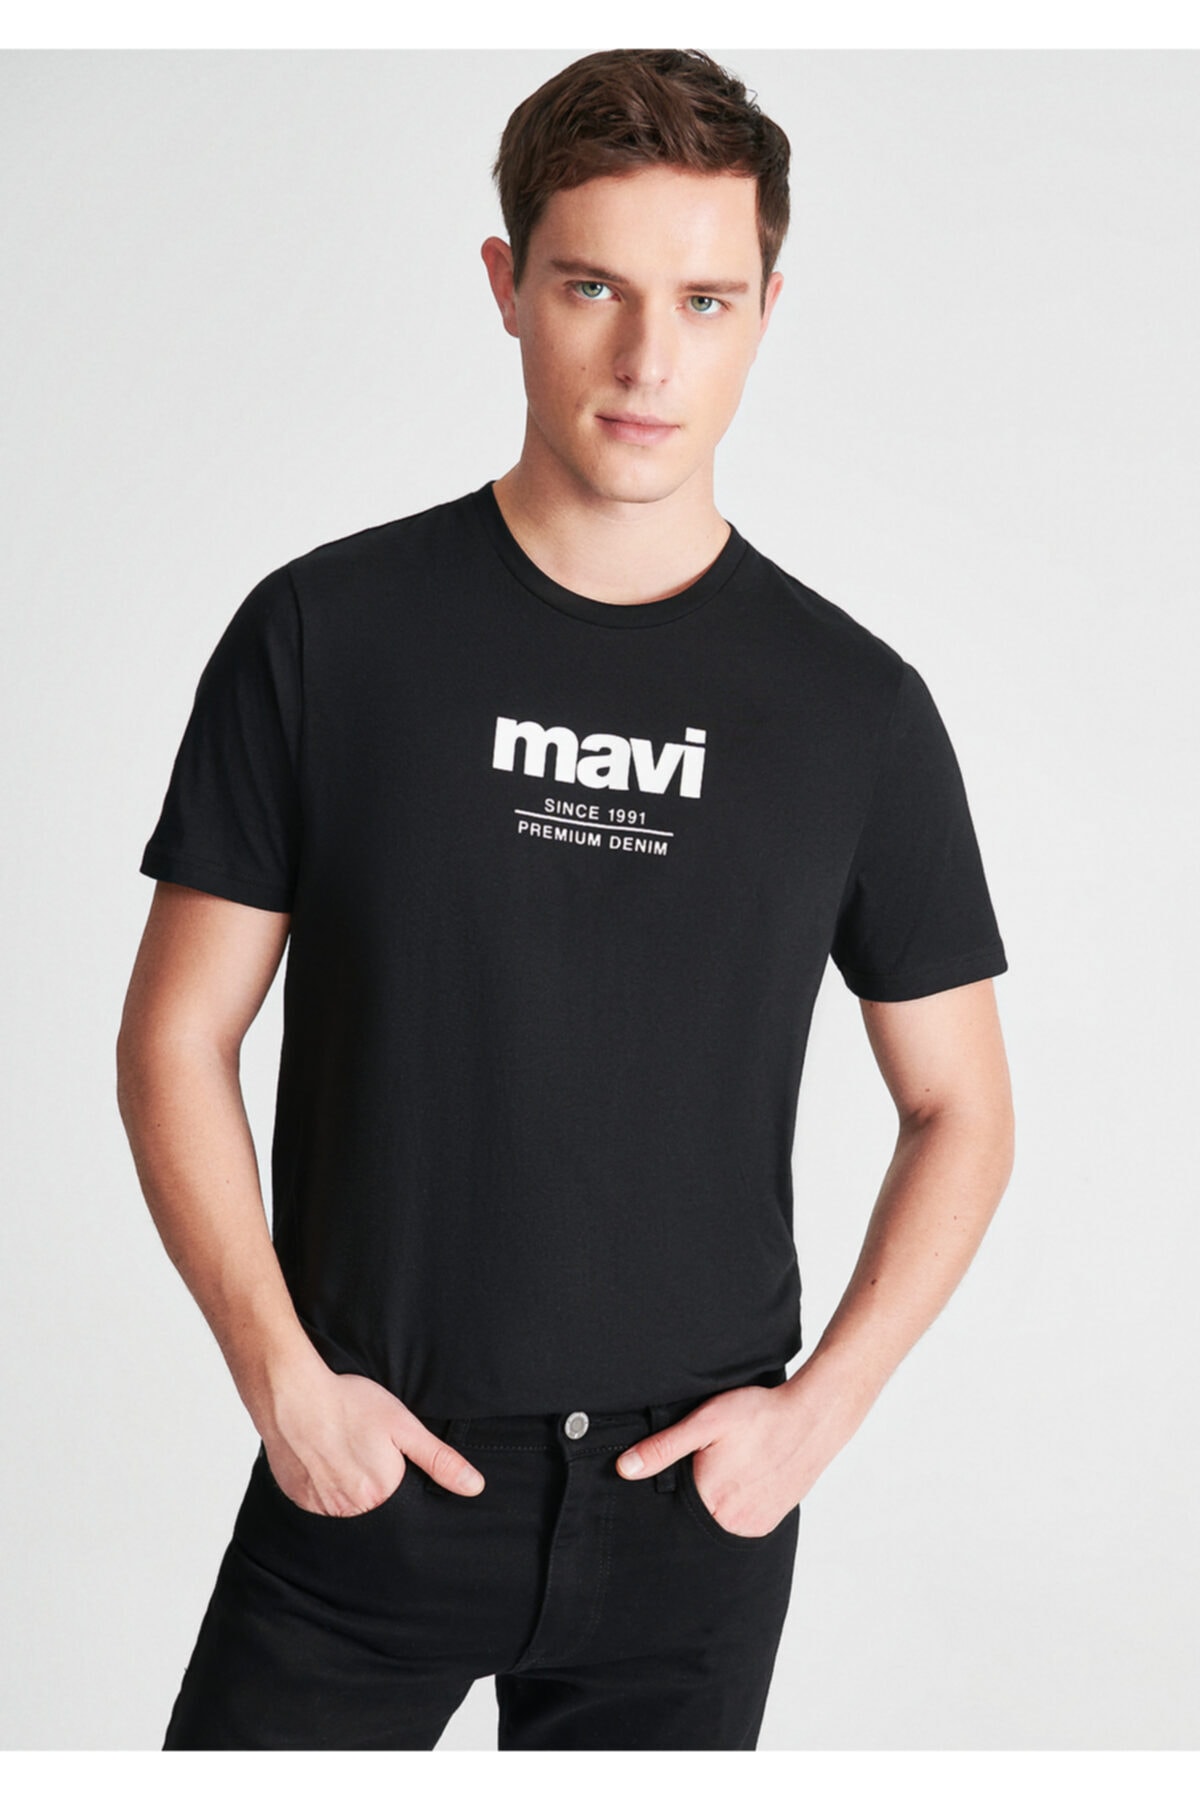 تیشرت مشکی  مردانه تکستدار ماوی Mavi